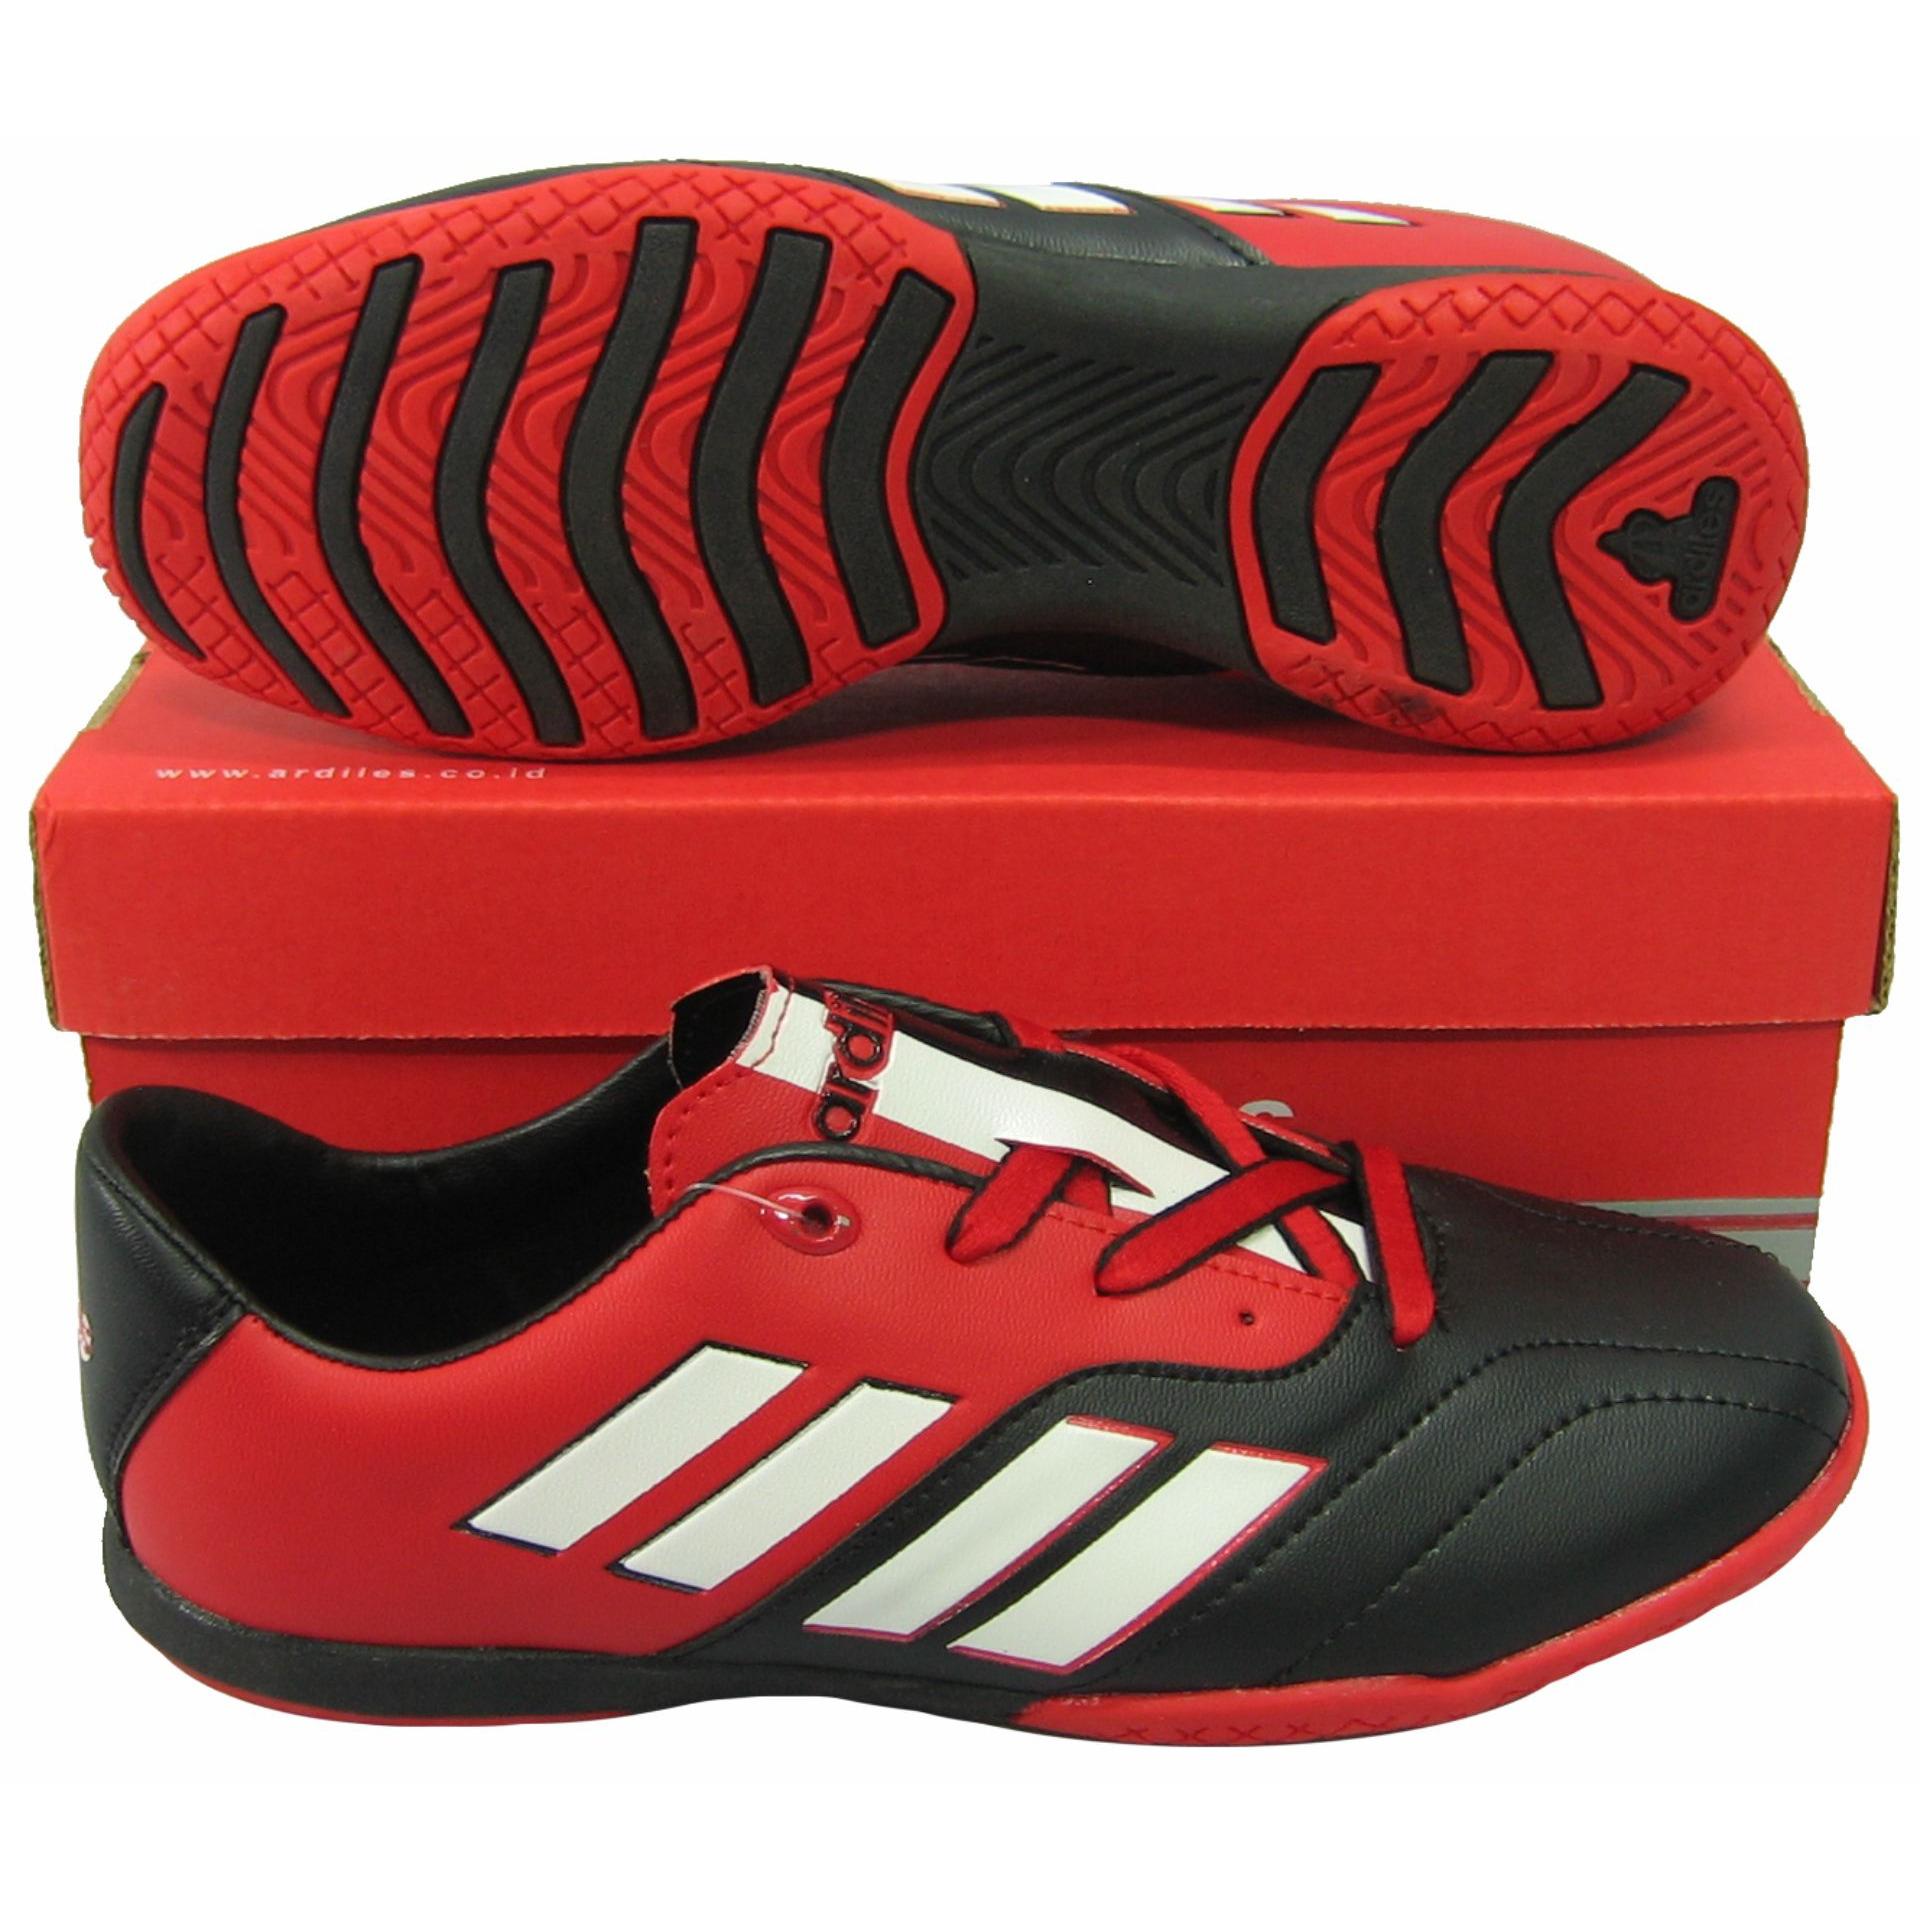 รองเท้ากีฬา รองเท้าฟุตซอลเด็ก ardiles AF-202J แดงดำ